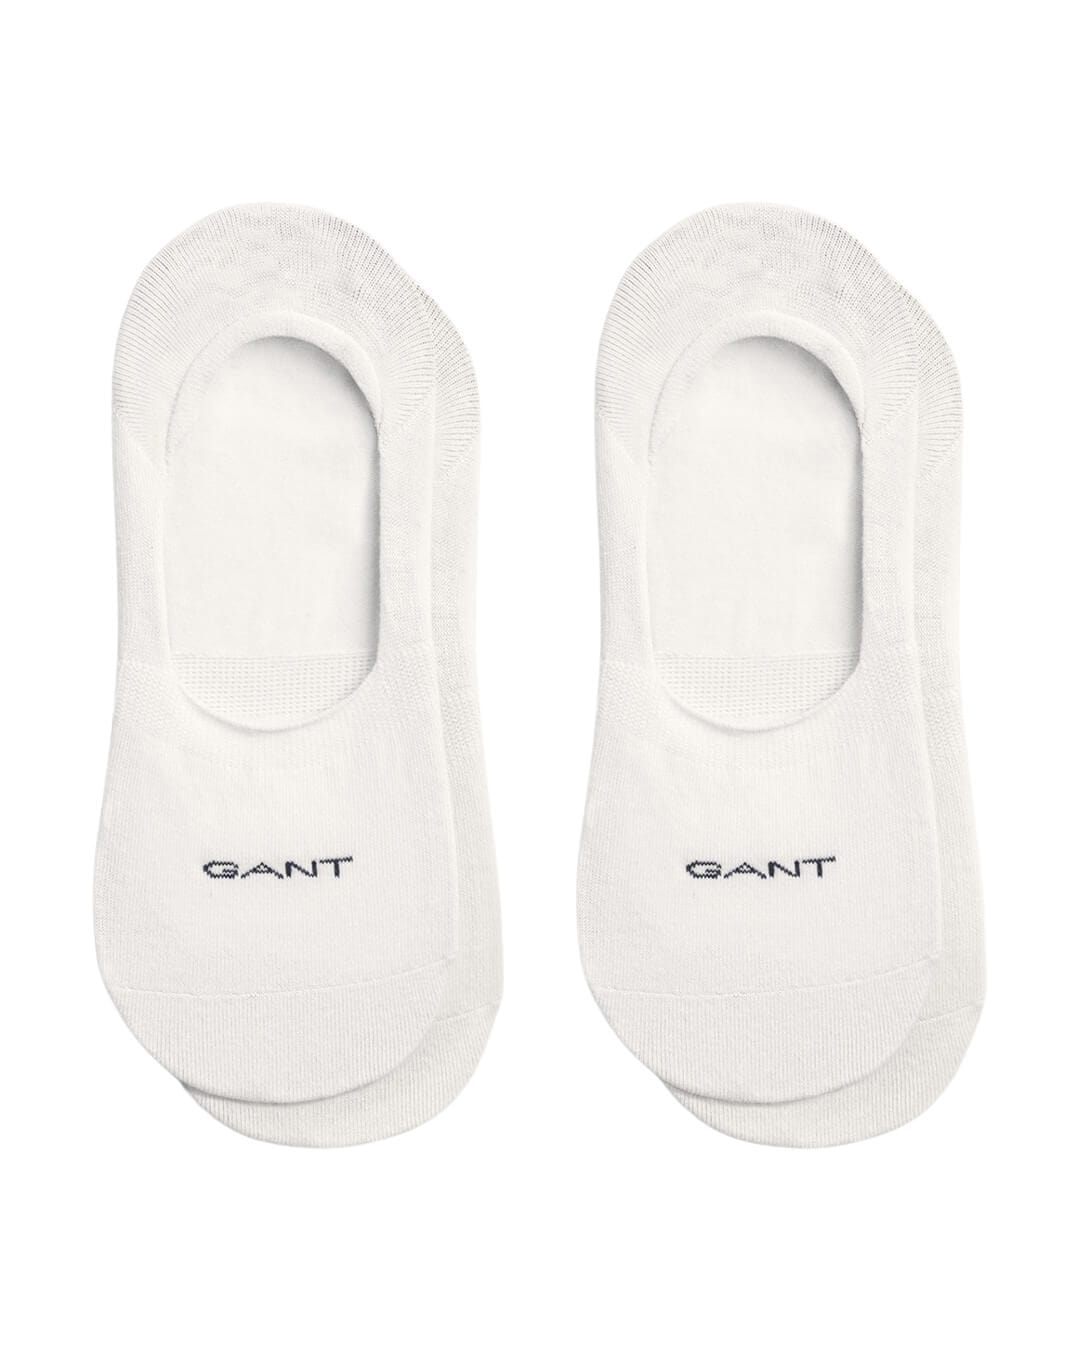 Gant Socks Gant White 2-Pack Invisible Socks